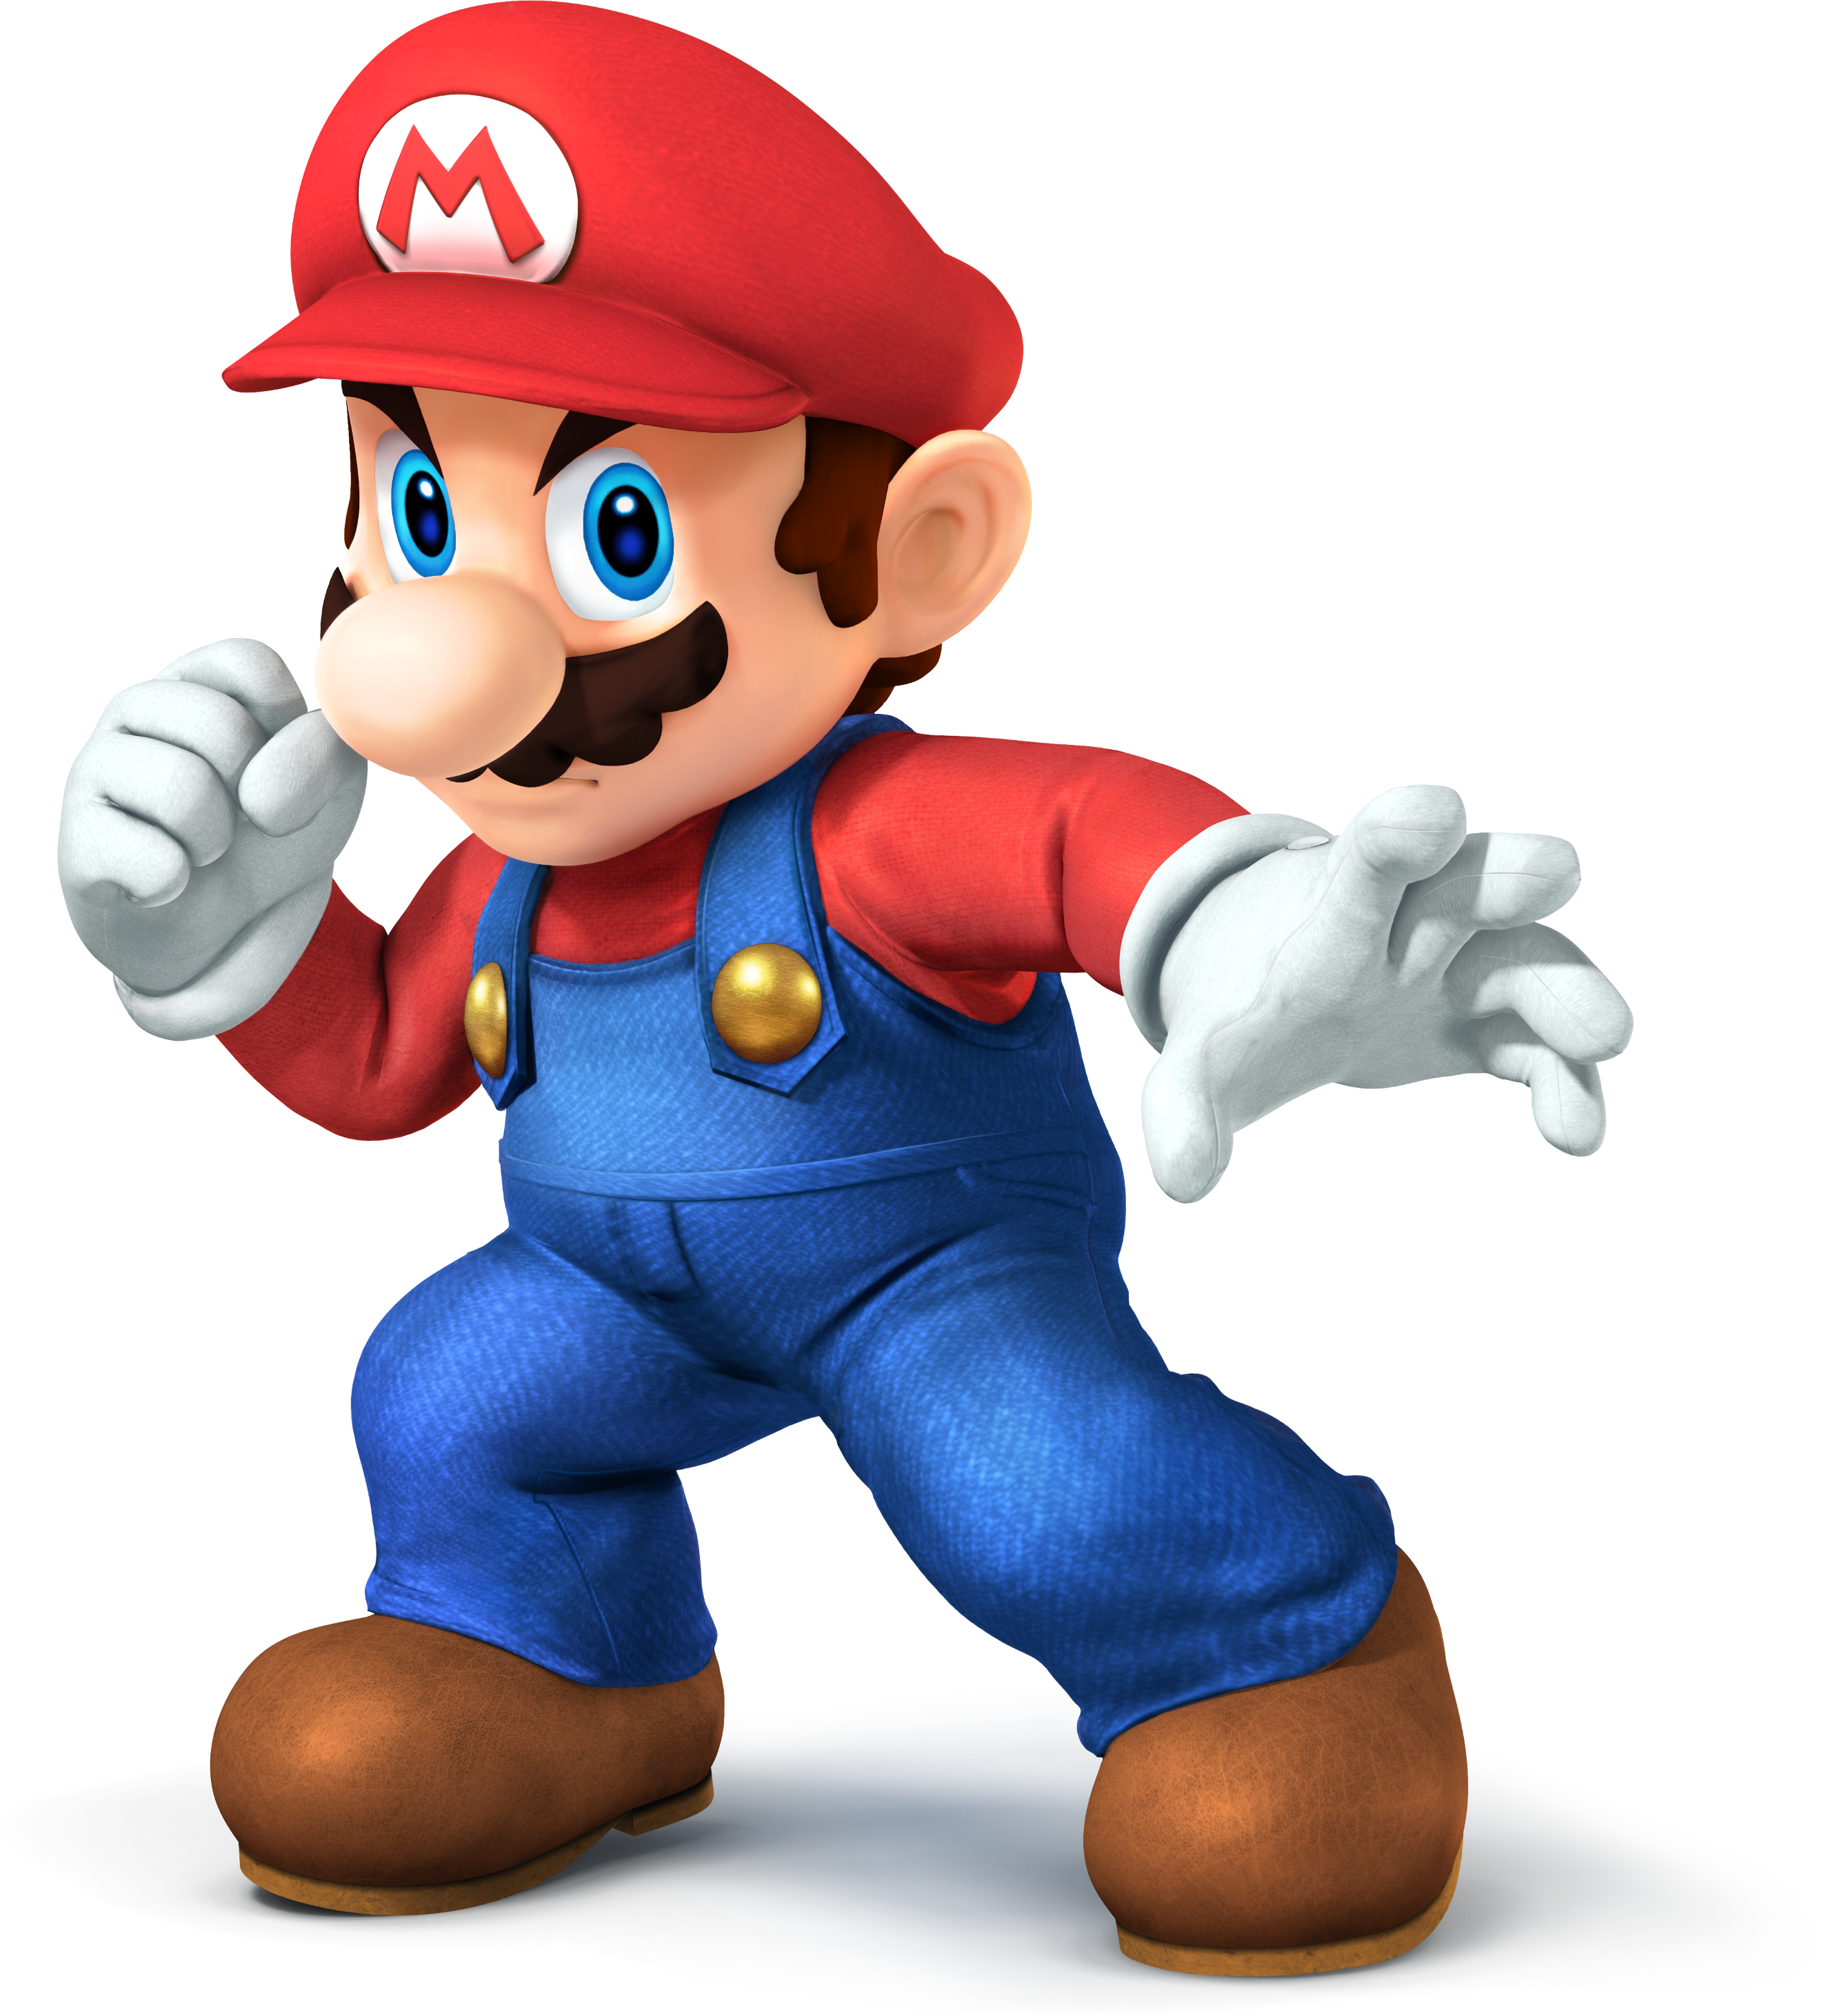 Марио Smash Bros. Super Mario Smash Bros игра. Марио персонажи. Super Smash Bros Марио.